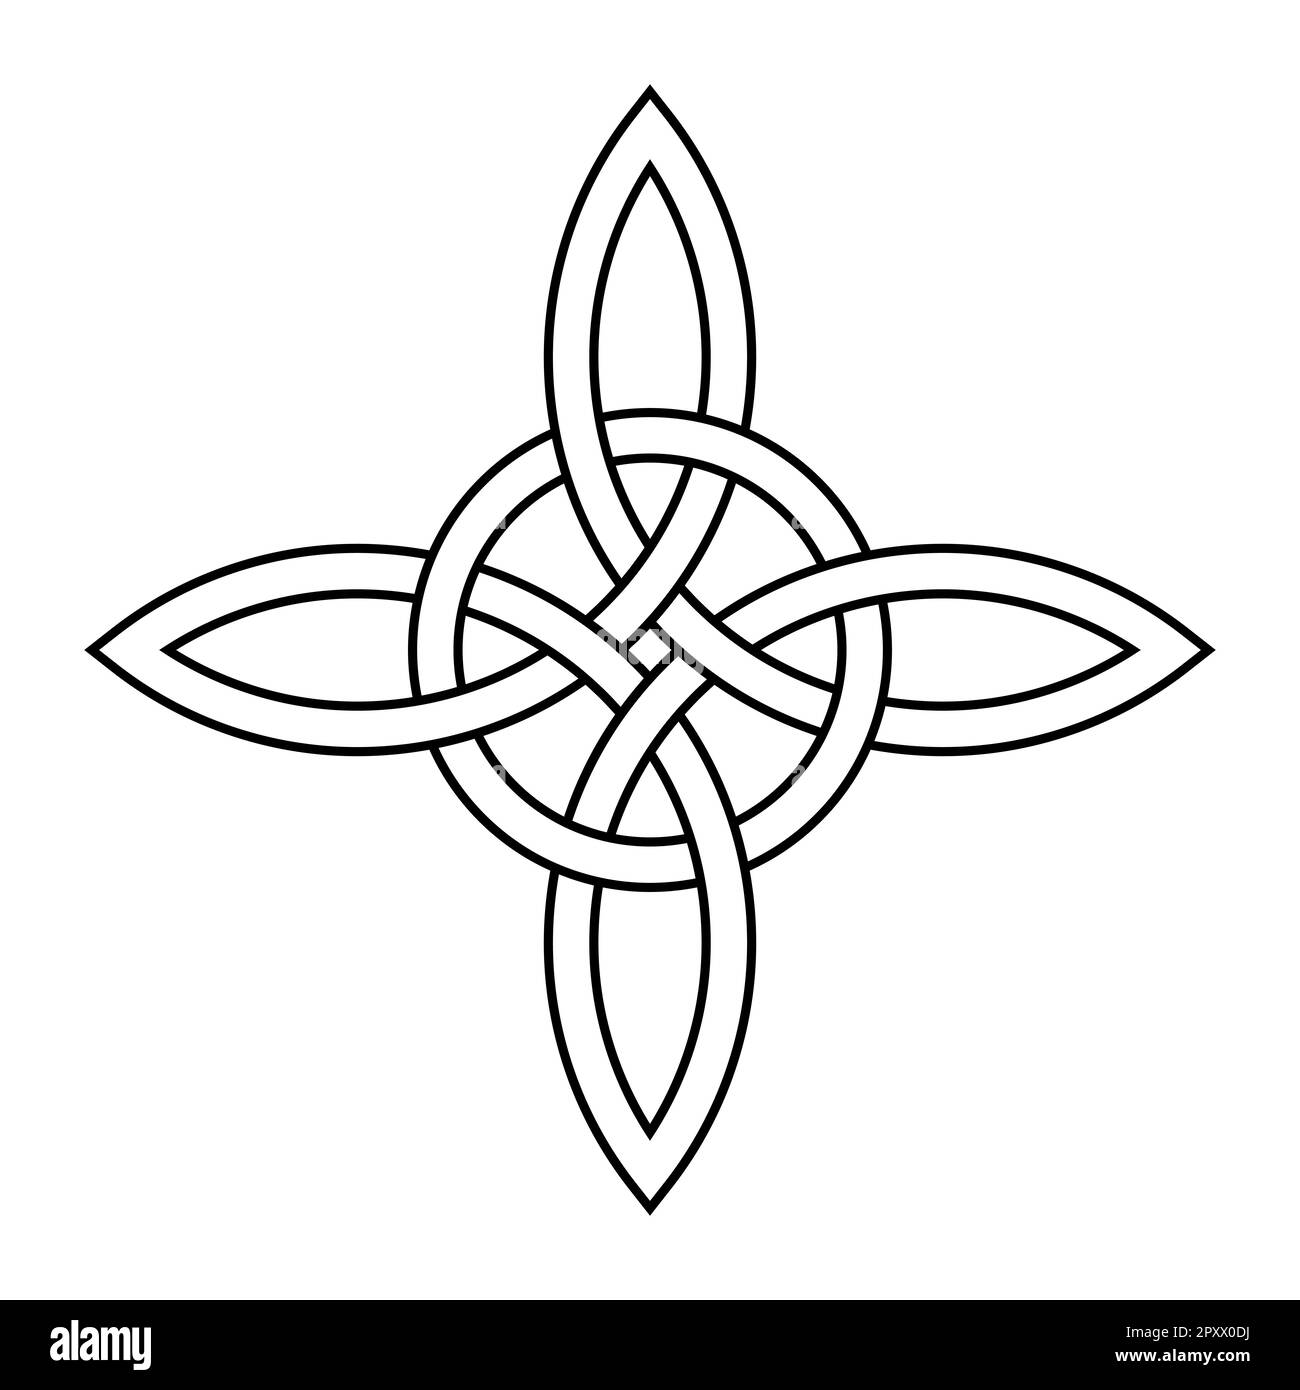 Keltischer Quadknoten mit interlaced-Kreis. Keltisches Kreuz, geformt durch vier endlose miteinander verbundene Bögen, die mit einem Kreis verbunden sind. Stockfoto